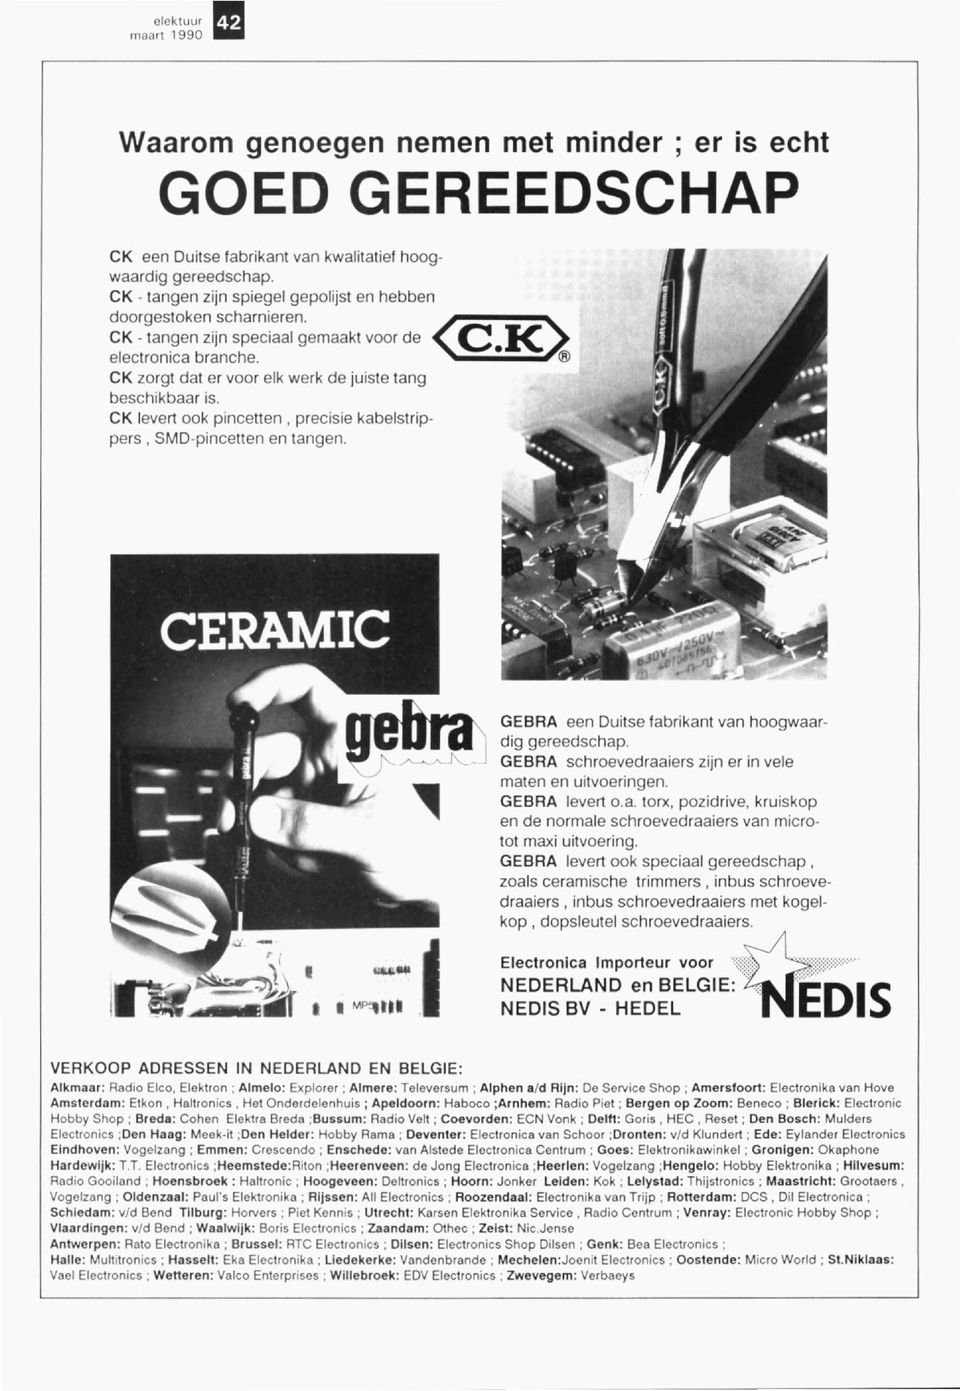 CK levert ook pincenen, precisie kabelstrippers, SMD-pincetten en tangen..... M~", GEBRA een Duitse fabrikant van hoogwaardig gereedschap. GEBRA schroevedraaiers zijn er in vele maten en uitvoeringen.